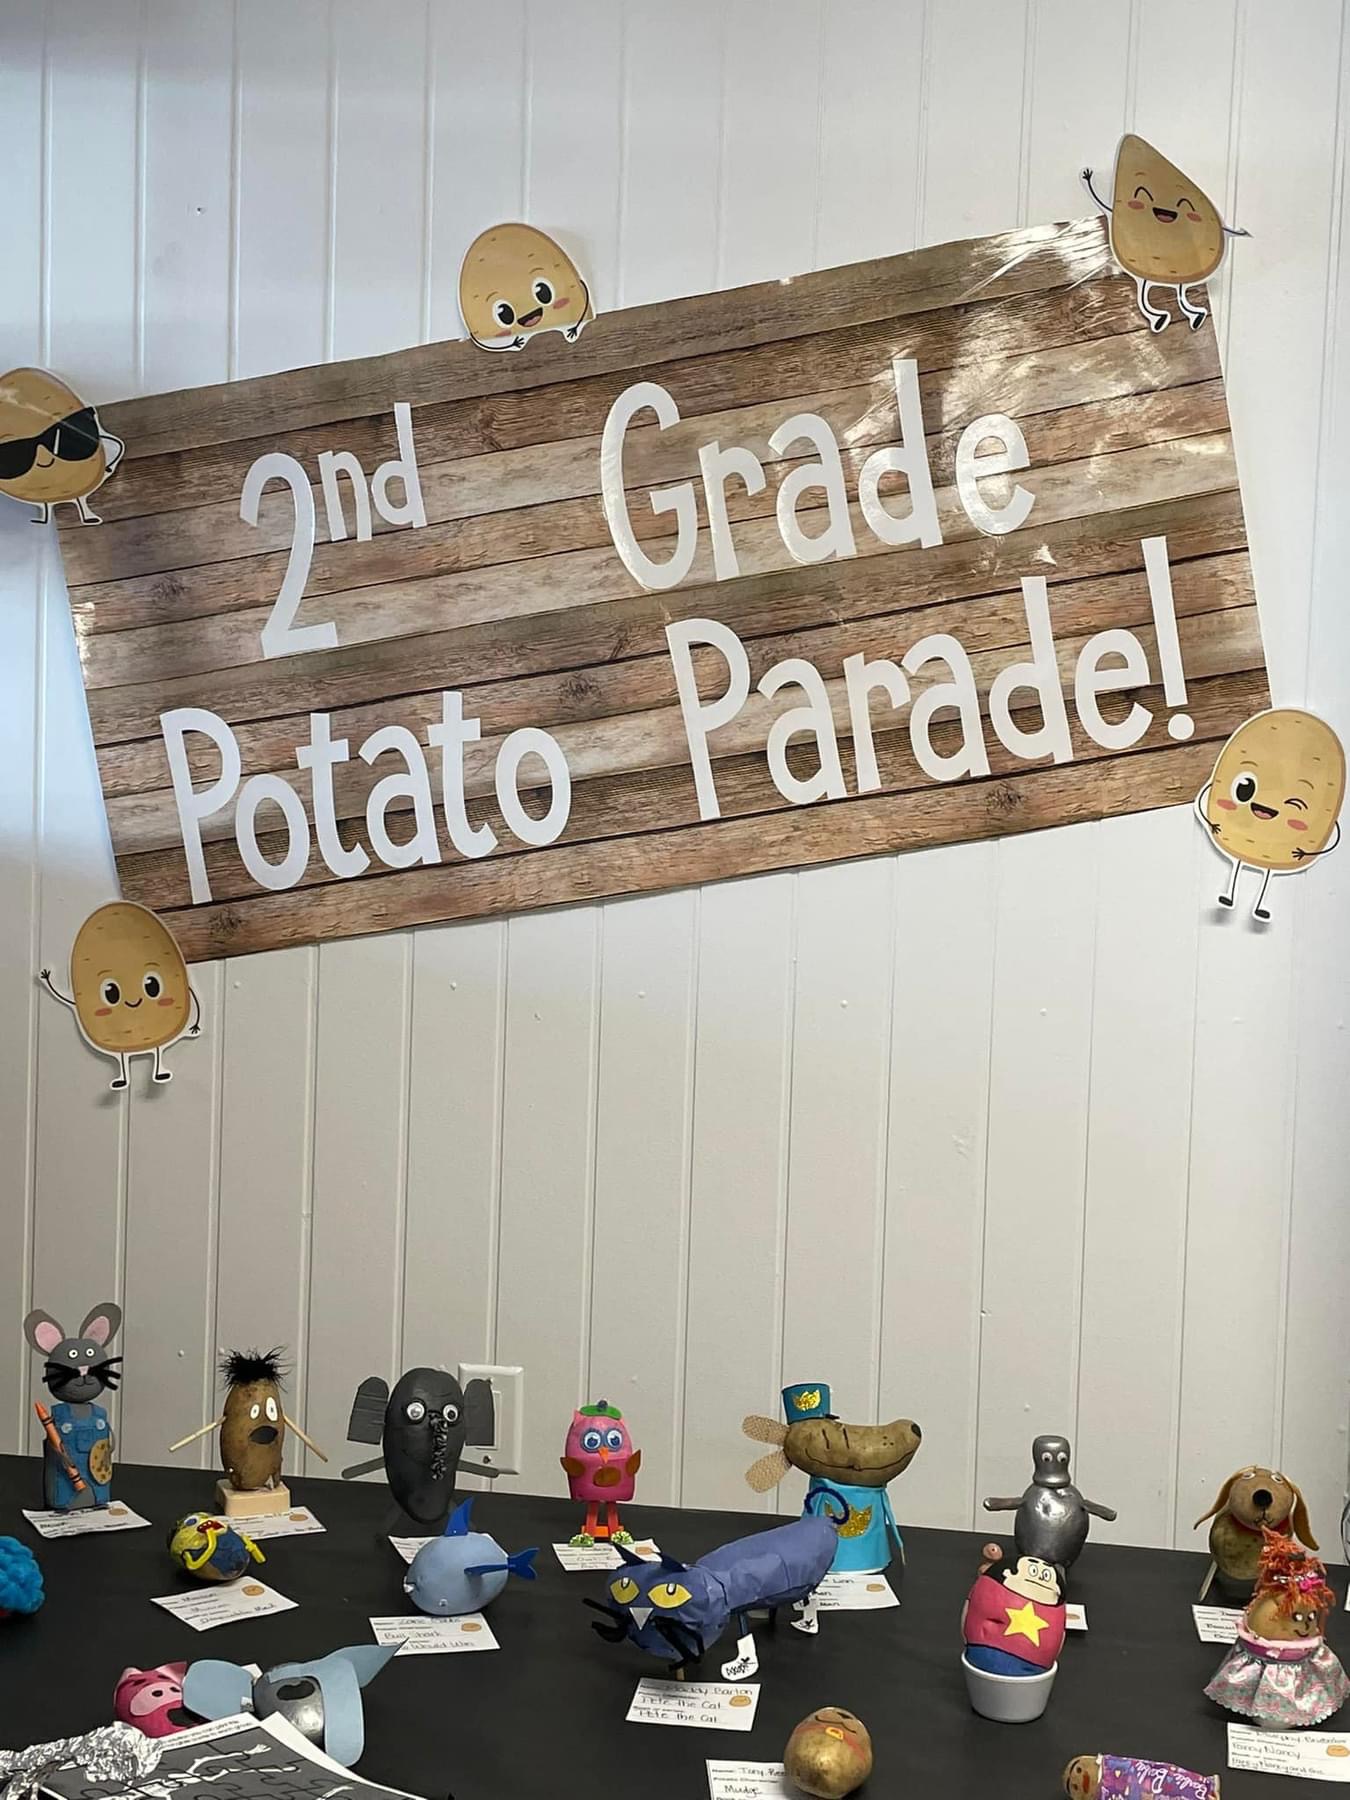 2nd grade potato parade